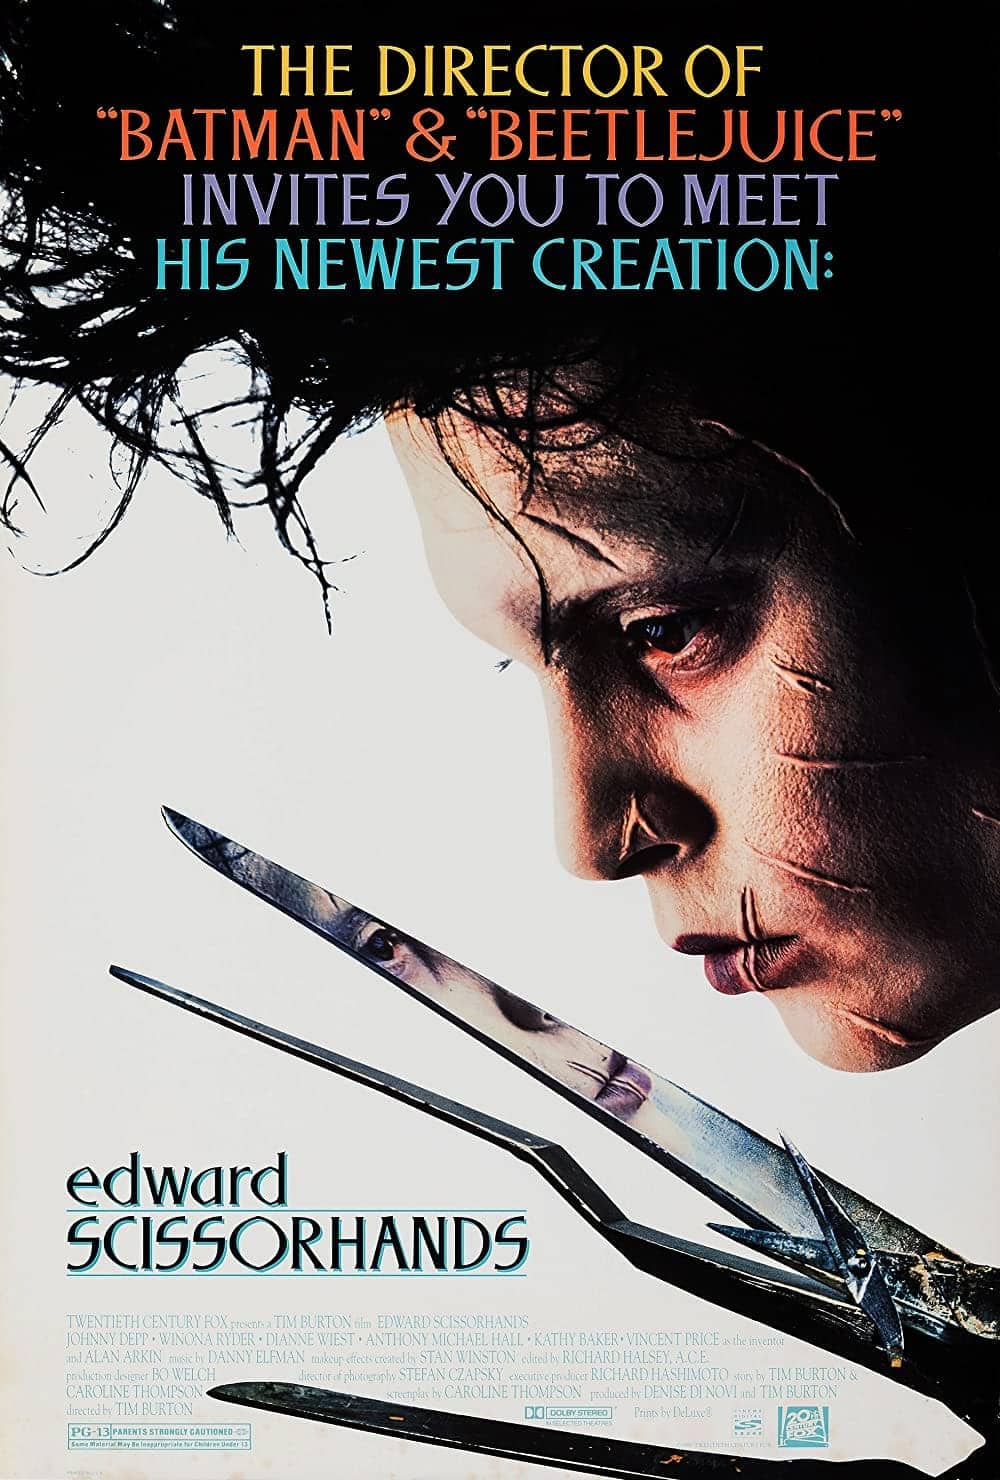 Edward Scissorhands (1990) 13 Best Johnny Depp Movies (Ranked)